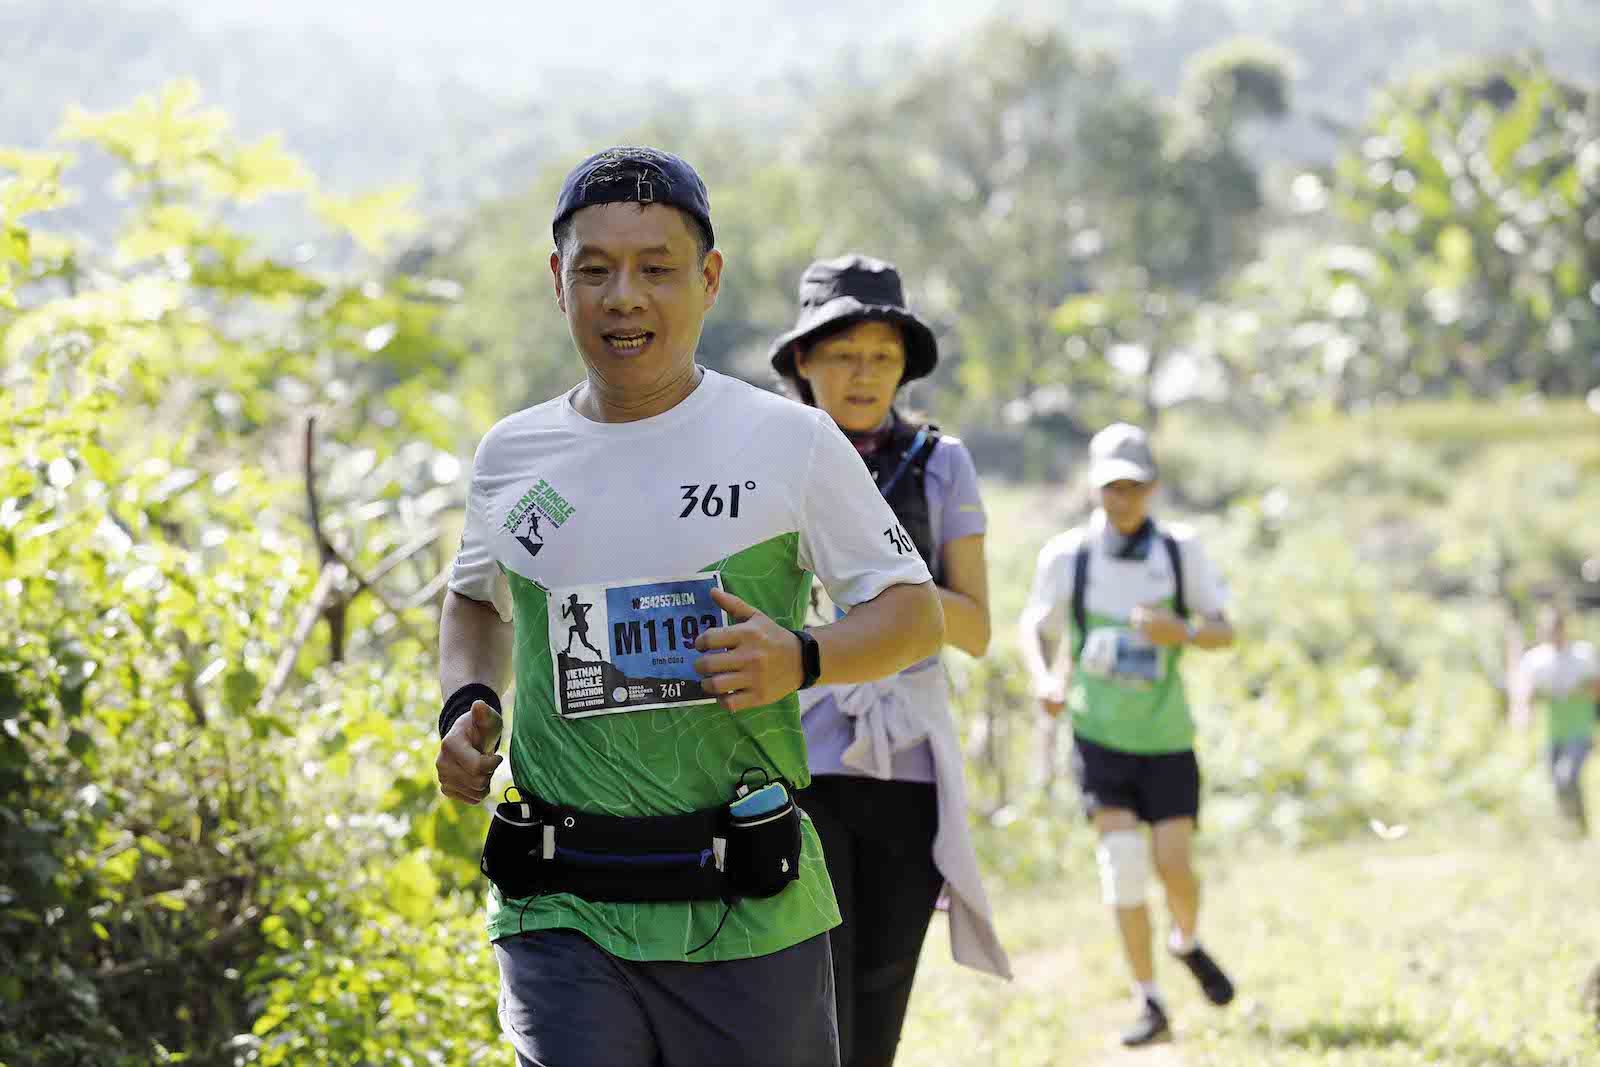 [QC] Du lịch thể thao tiếp tục lên ngôI vớI giảI chạy Vietnam Jungle Marathon Pù Luông 2020 - du lich the thao tiep tuc len ngoi voi vietnam jungle marathon 1